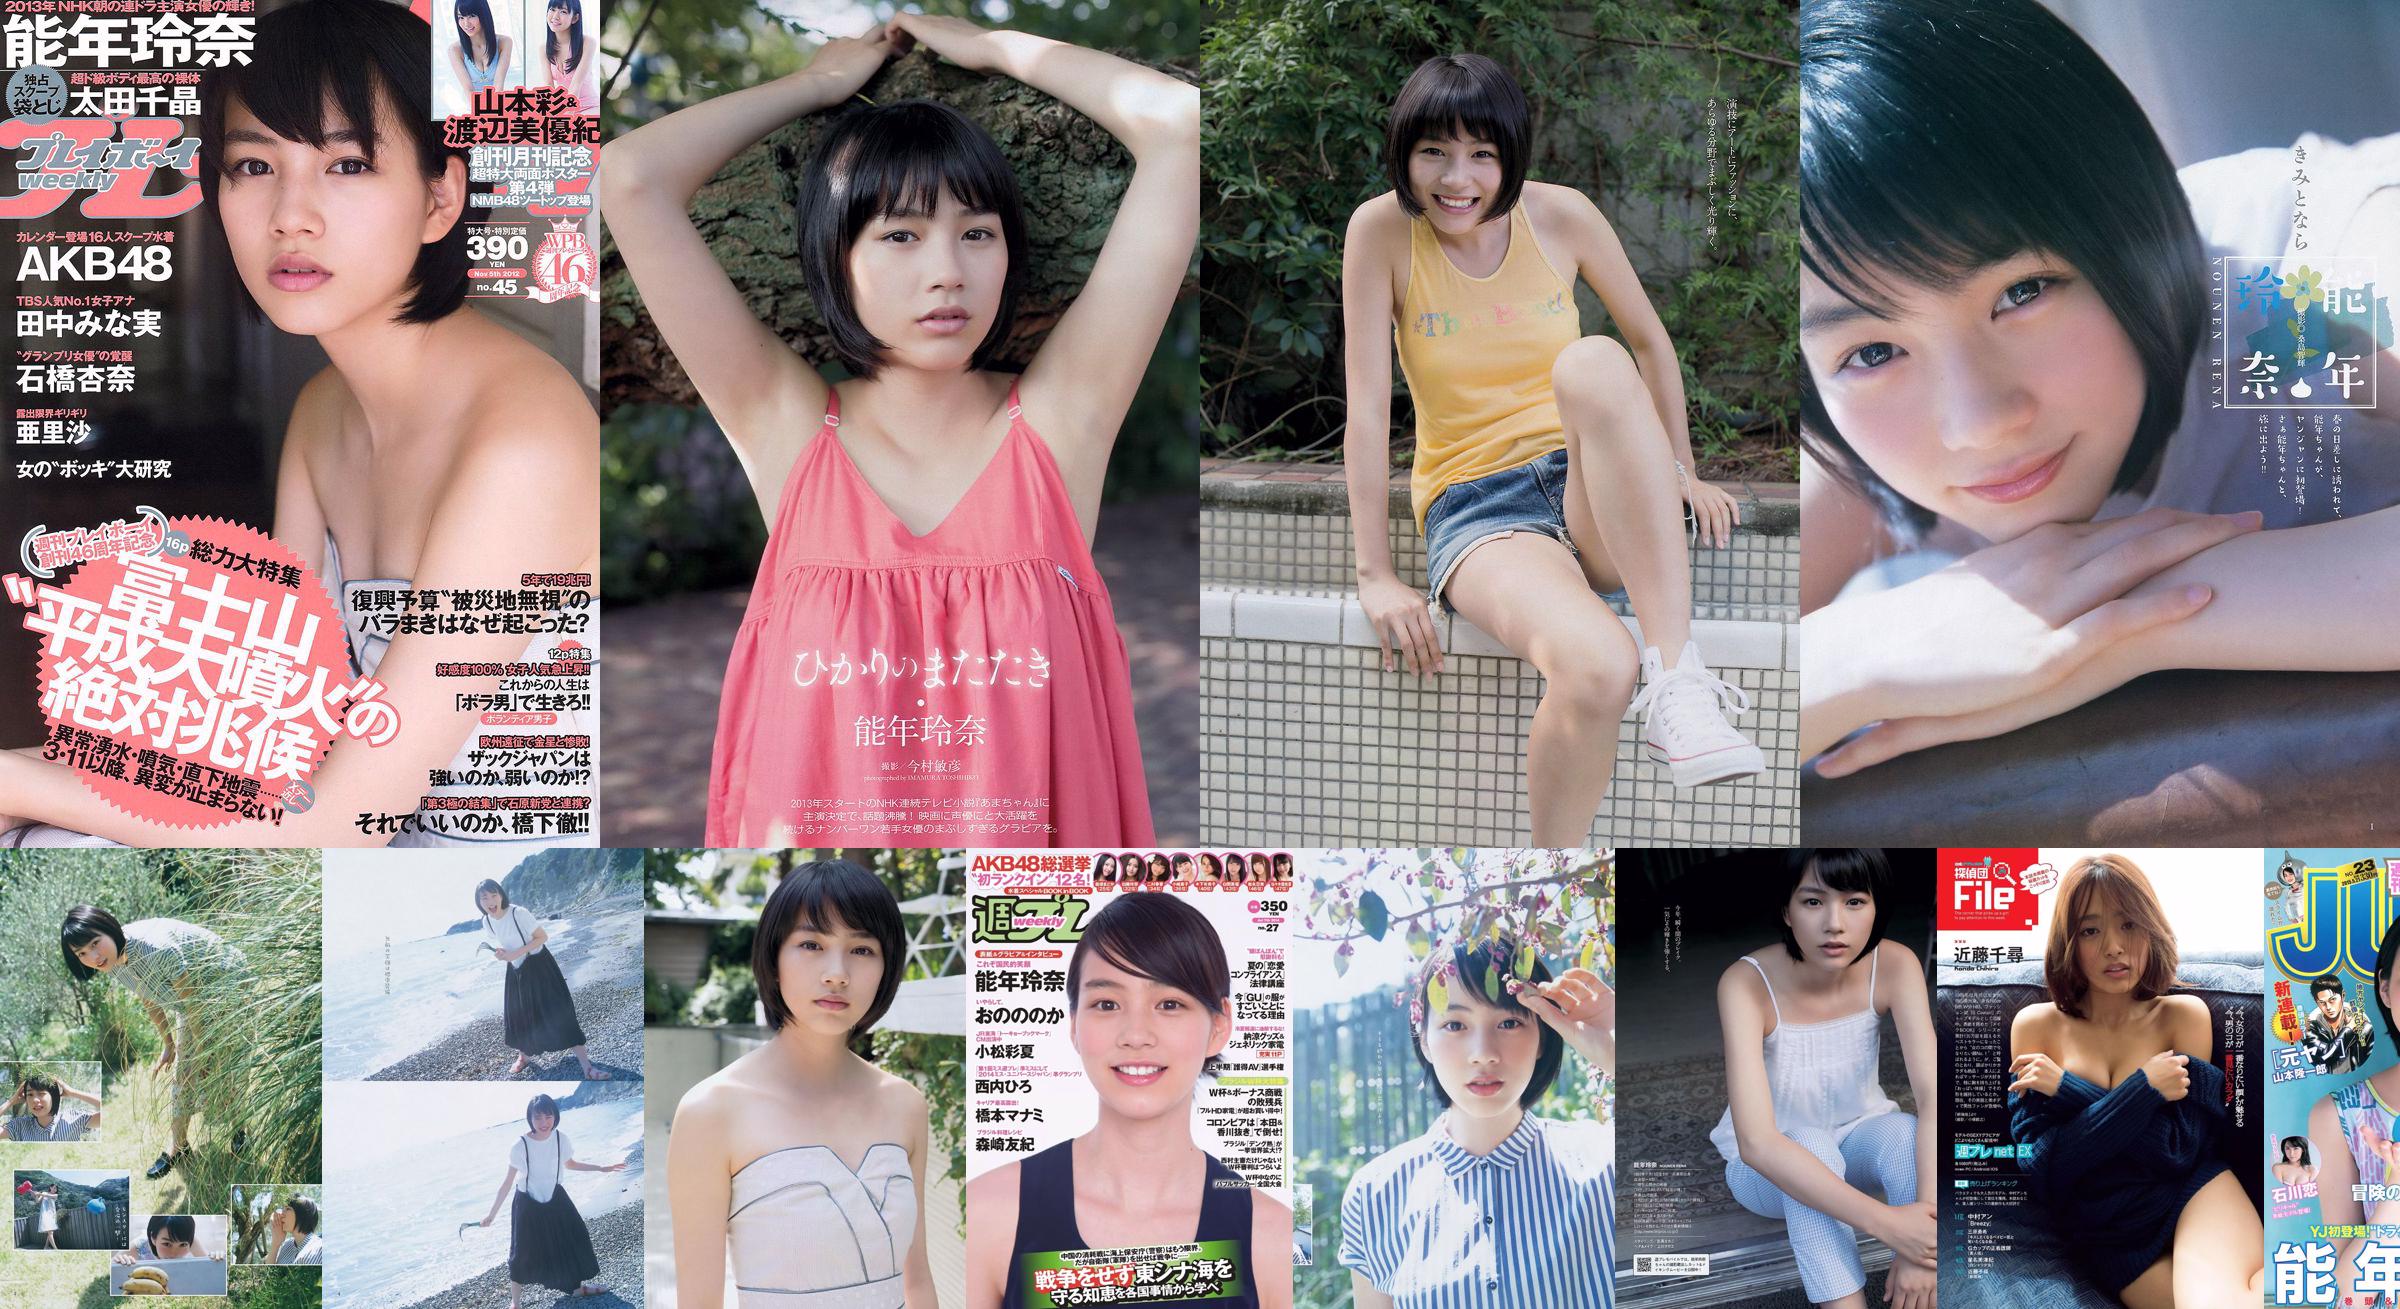 Rena Nonen AKB48 Anna Ishibashi Arisa Ili Chiaki Ota [Weekly Playboy] 2012 No.45 รูปภาพ No.37cd46 หน้า 3